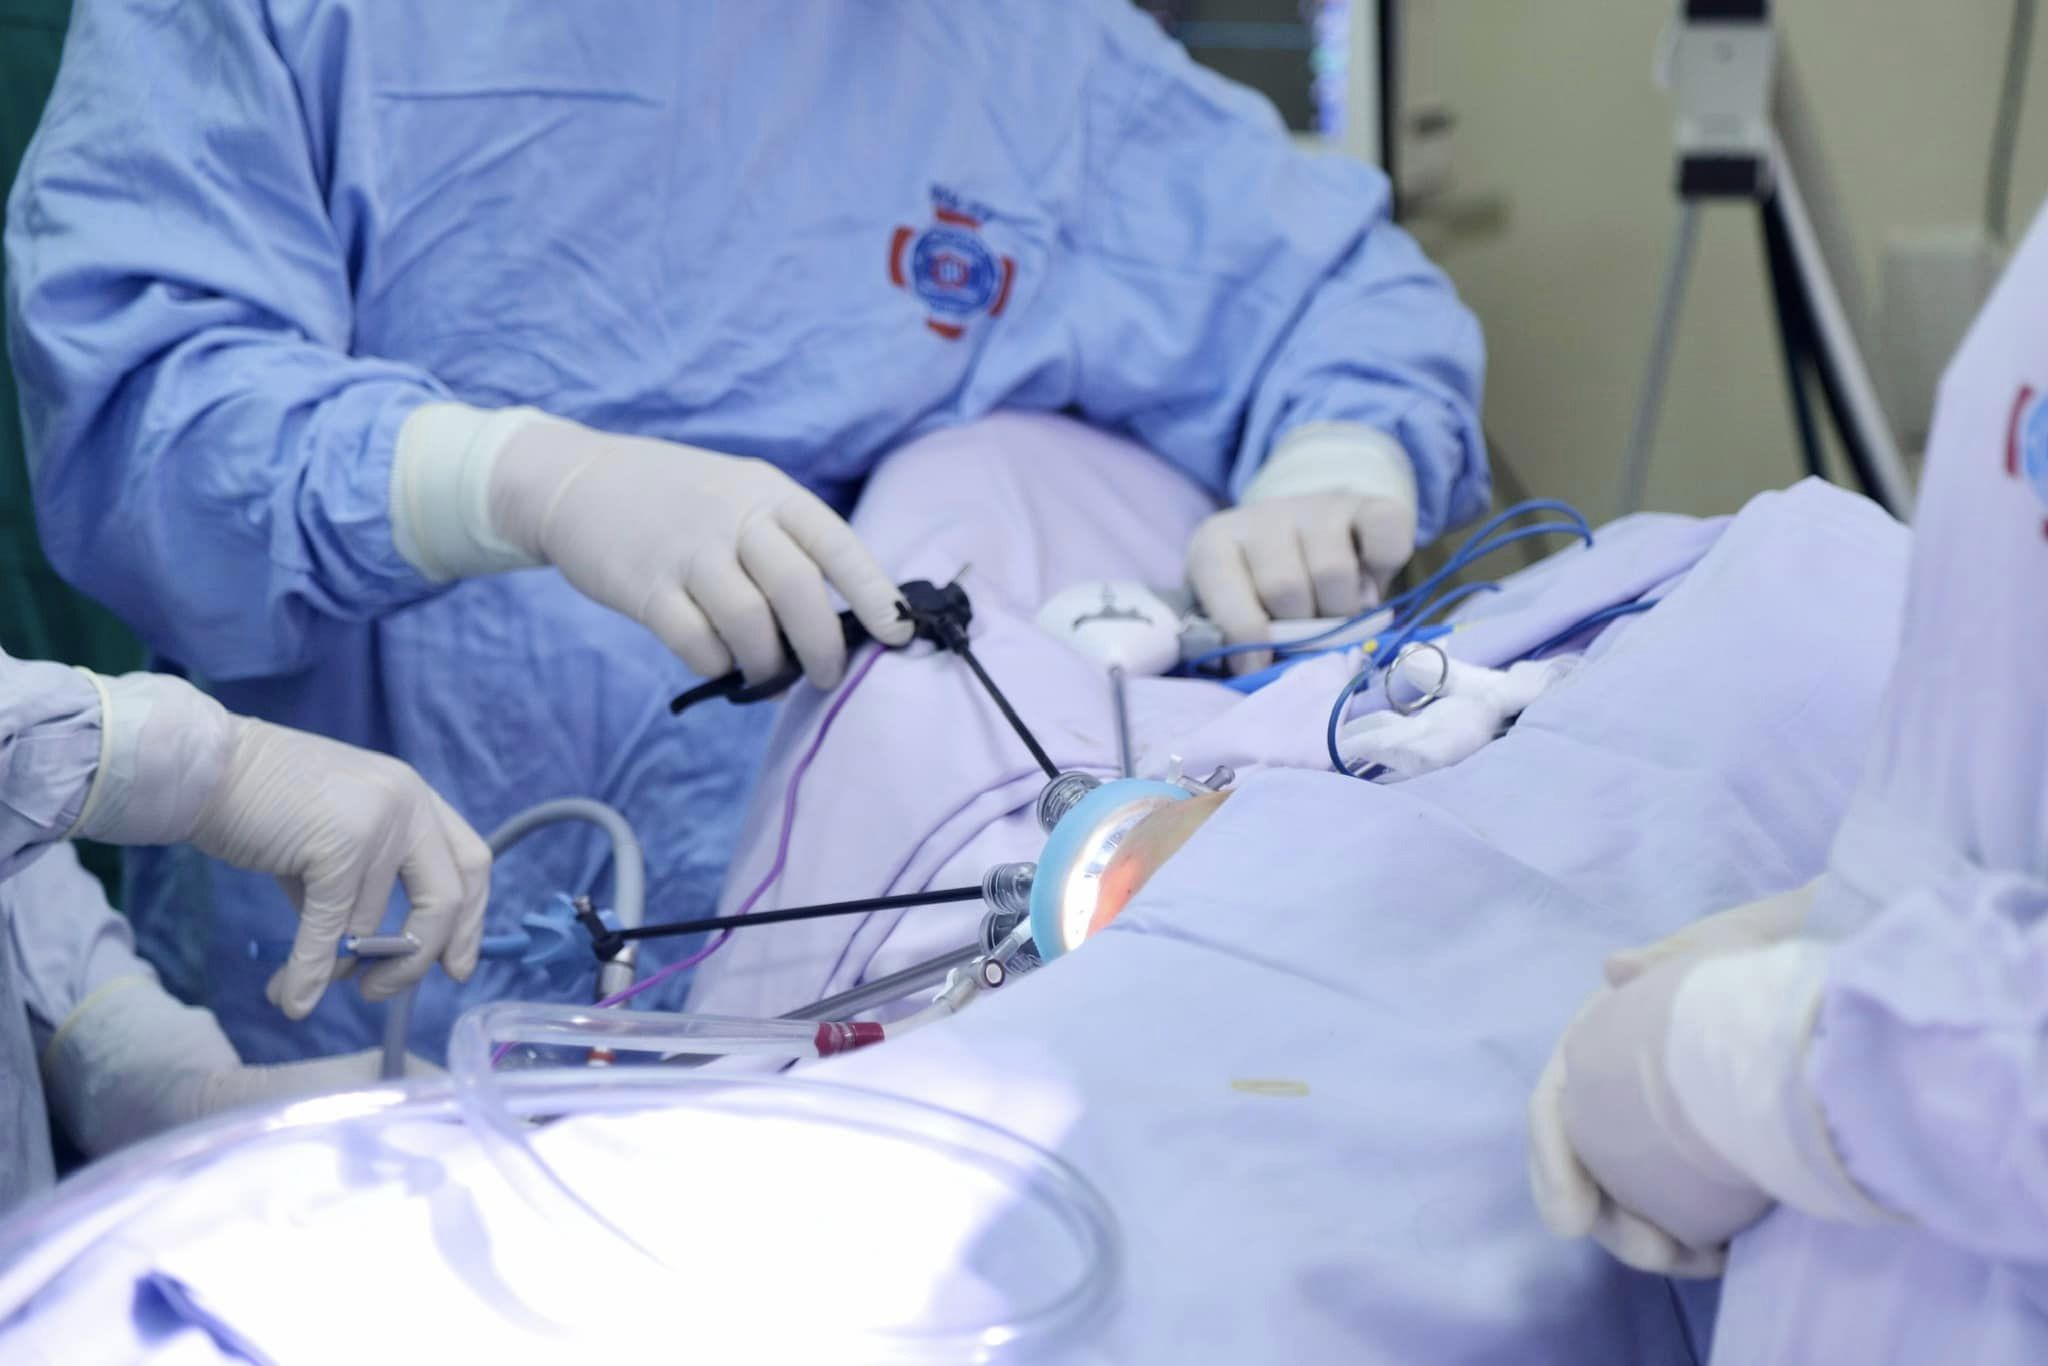 Lần đầu tiên nội soi một lỗ cắt tuyến vú kết hợp tạo hình thẩm mỹ cho bệnh nhân ung thư vú - Ảnh 2.